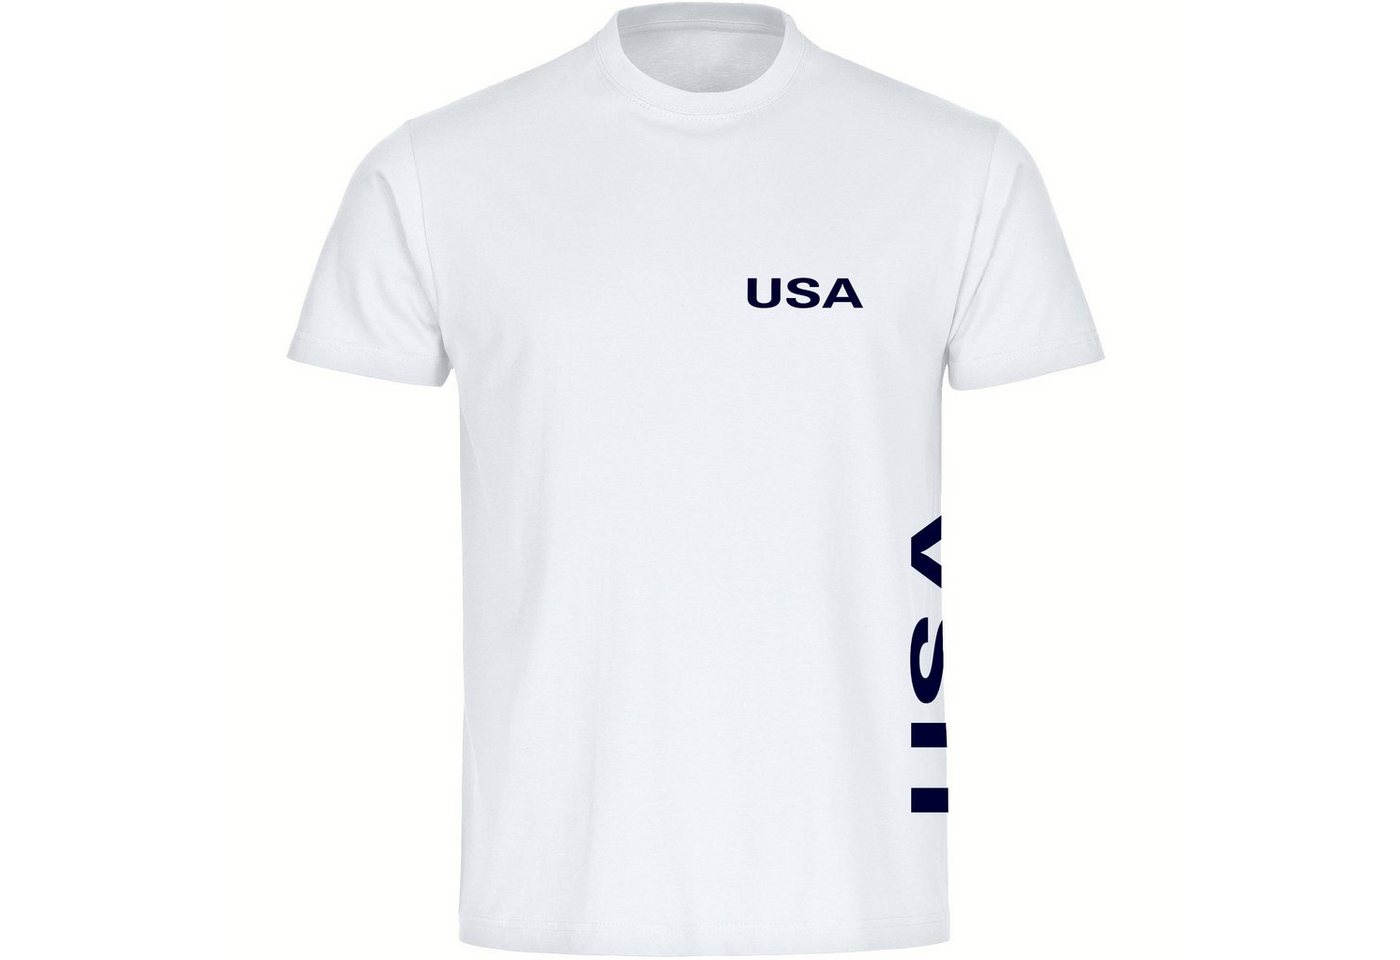 multifanshop T-Shirt Kinder USA - Brust & Seite - Jungen Mädchen Shirt Fanartikel von multifanshop